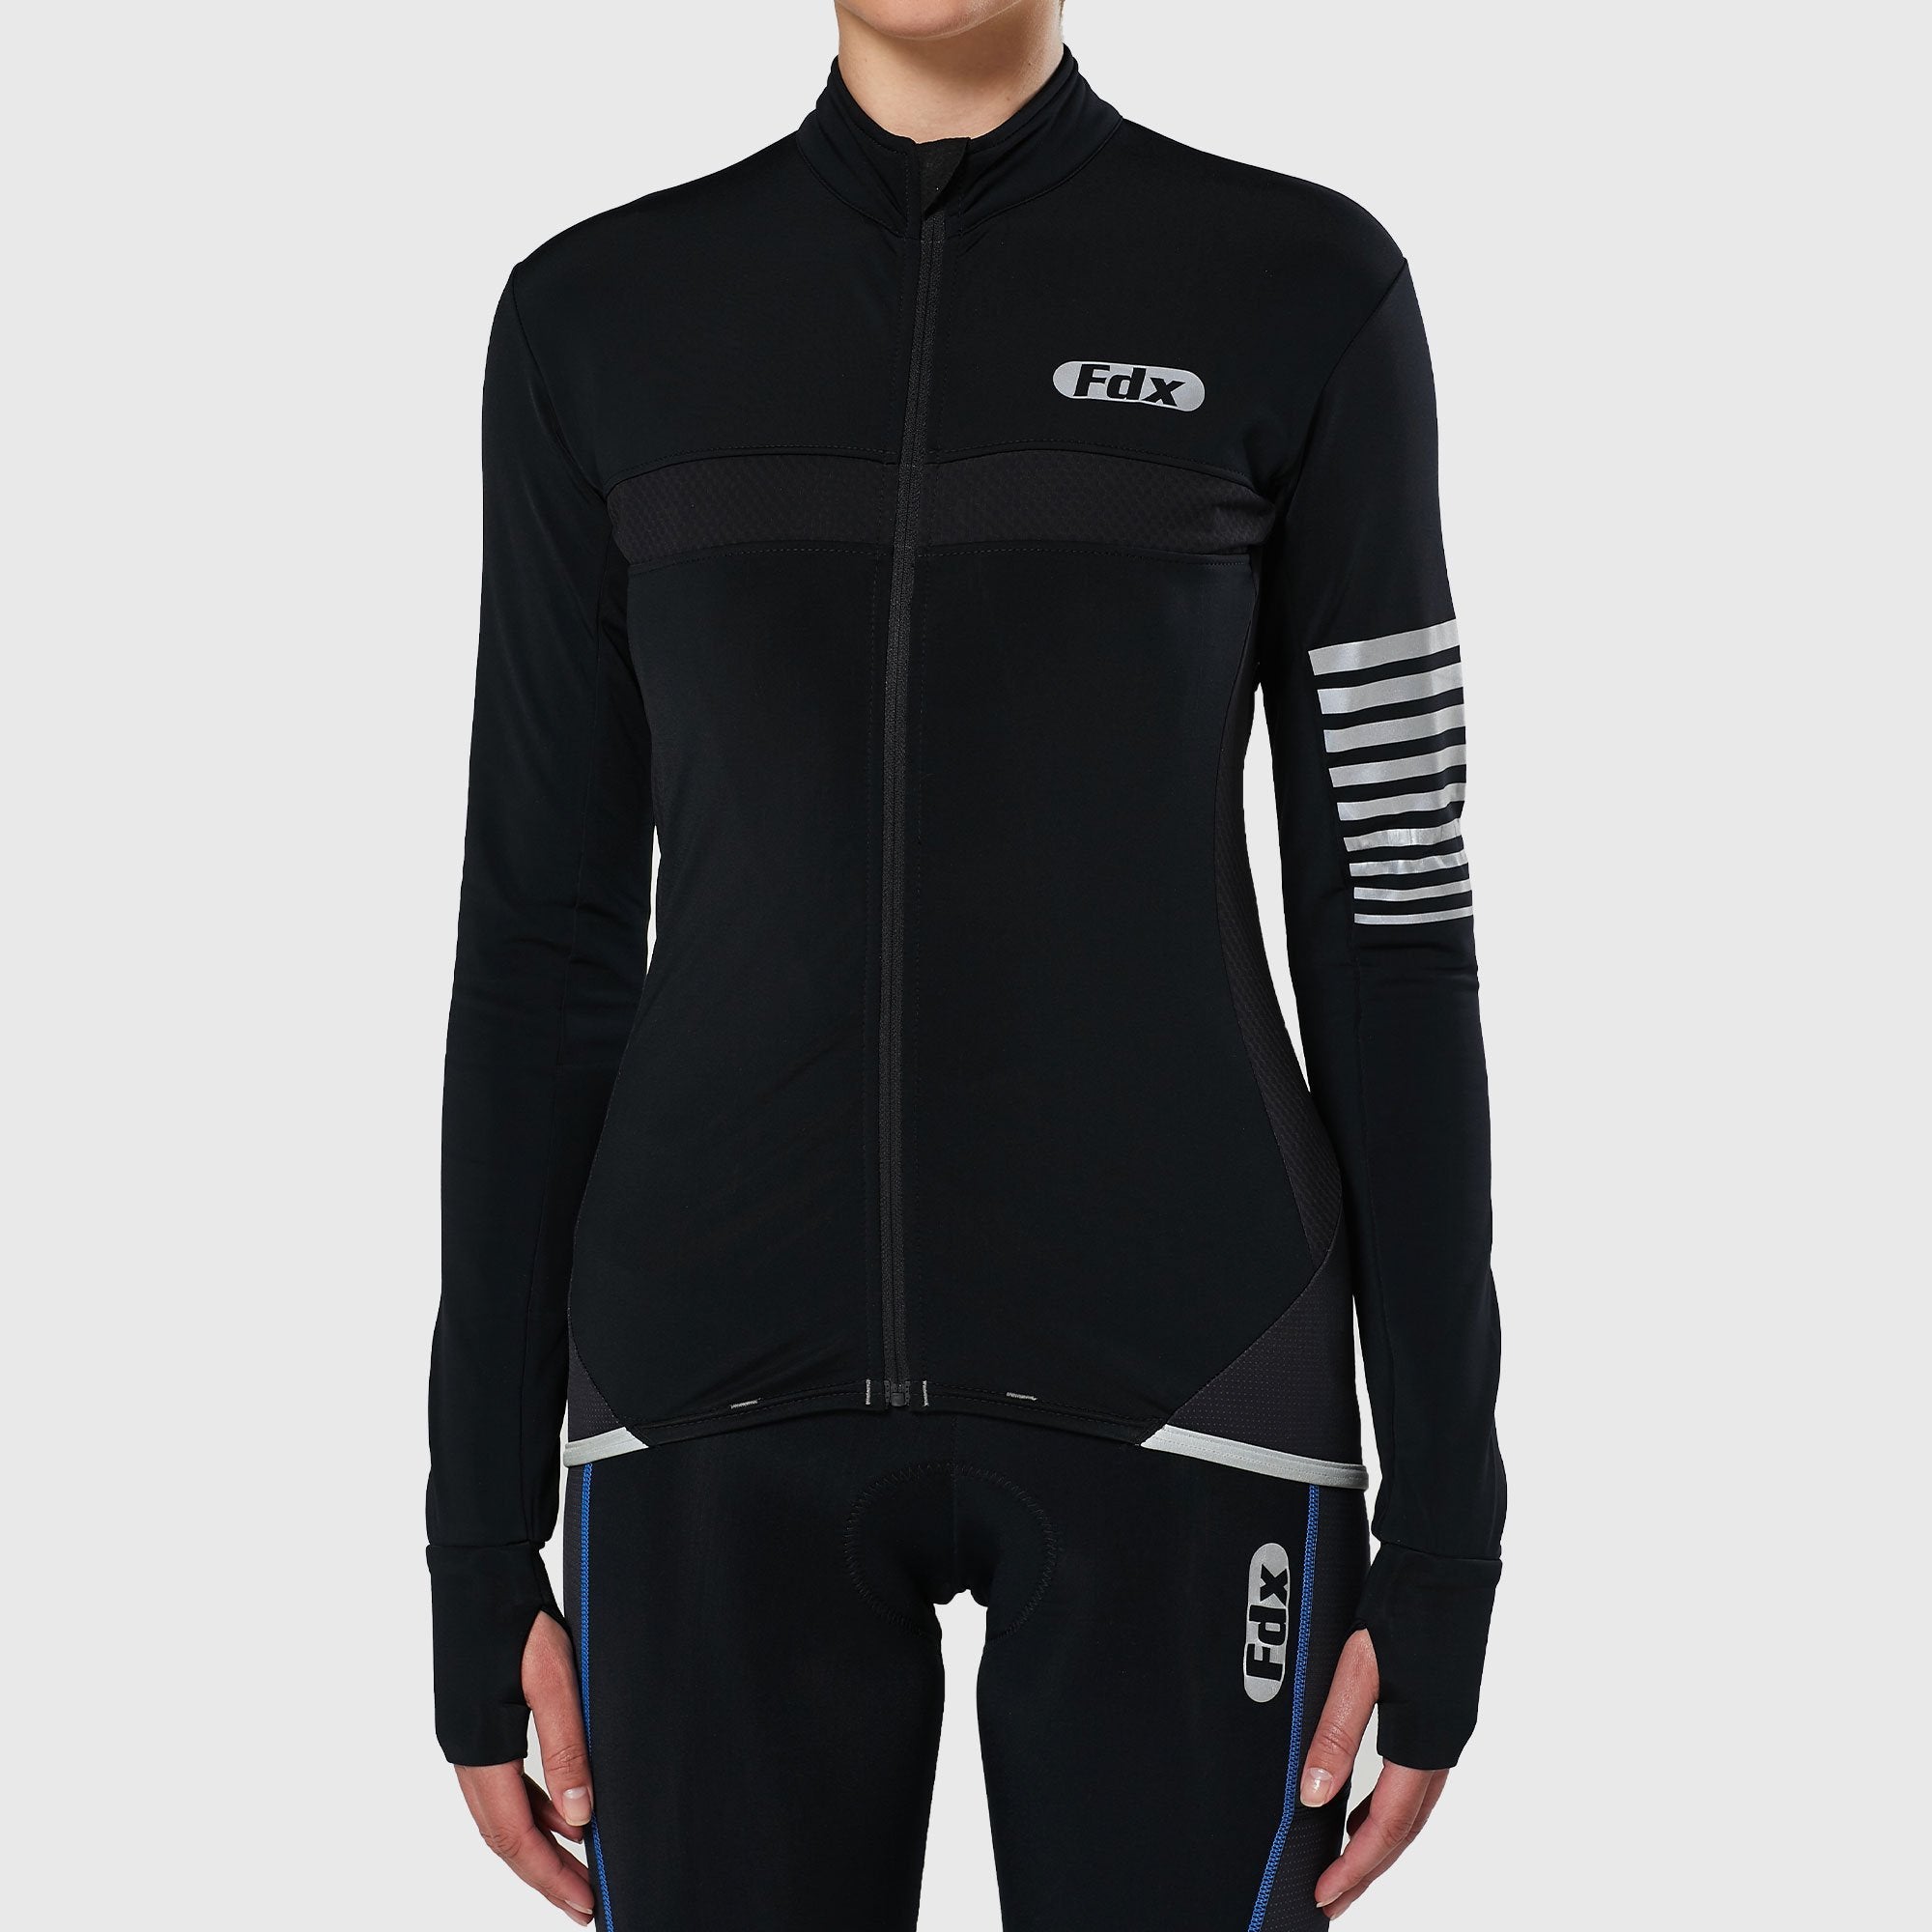 Fdx Women's Black Long Sleeve Cycling Jersey & Gel Padded Bib Tights Pants for Winter Roubaix Thermal Fleece Road Bike Wear Windproof, Hi-viz Reflectors & Pockets - All Day